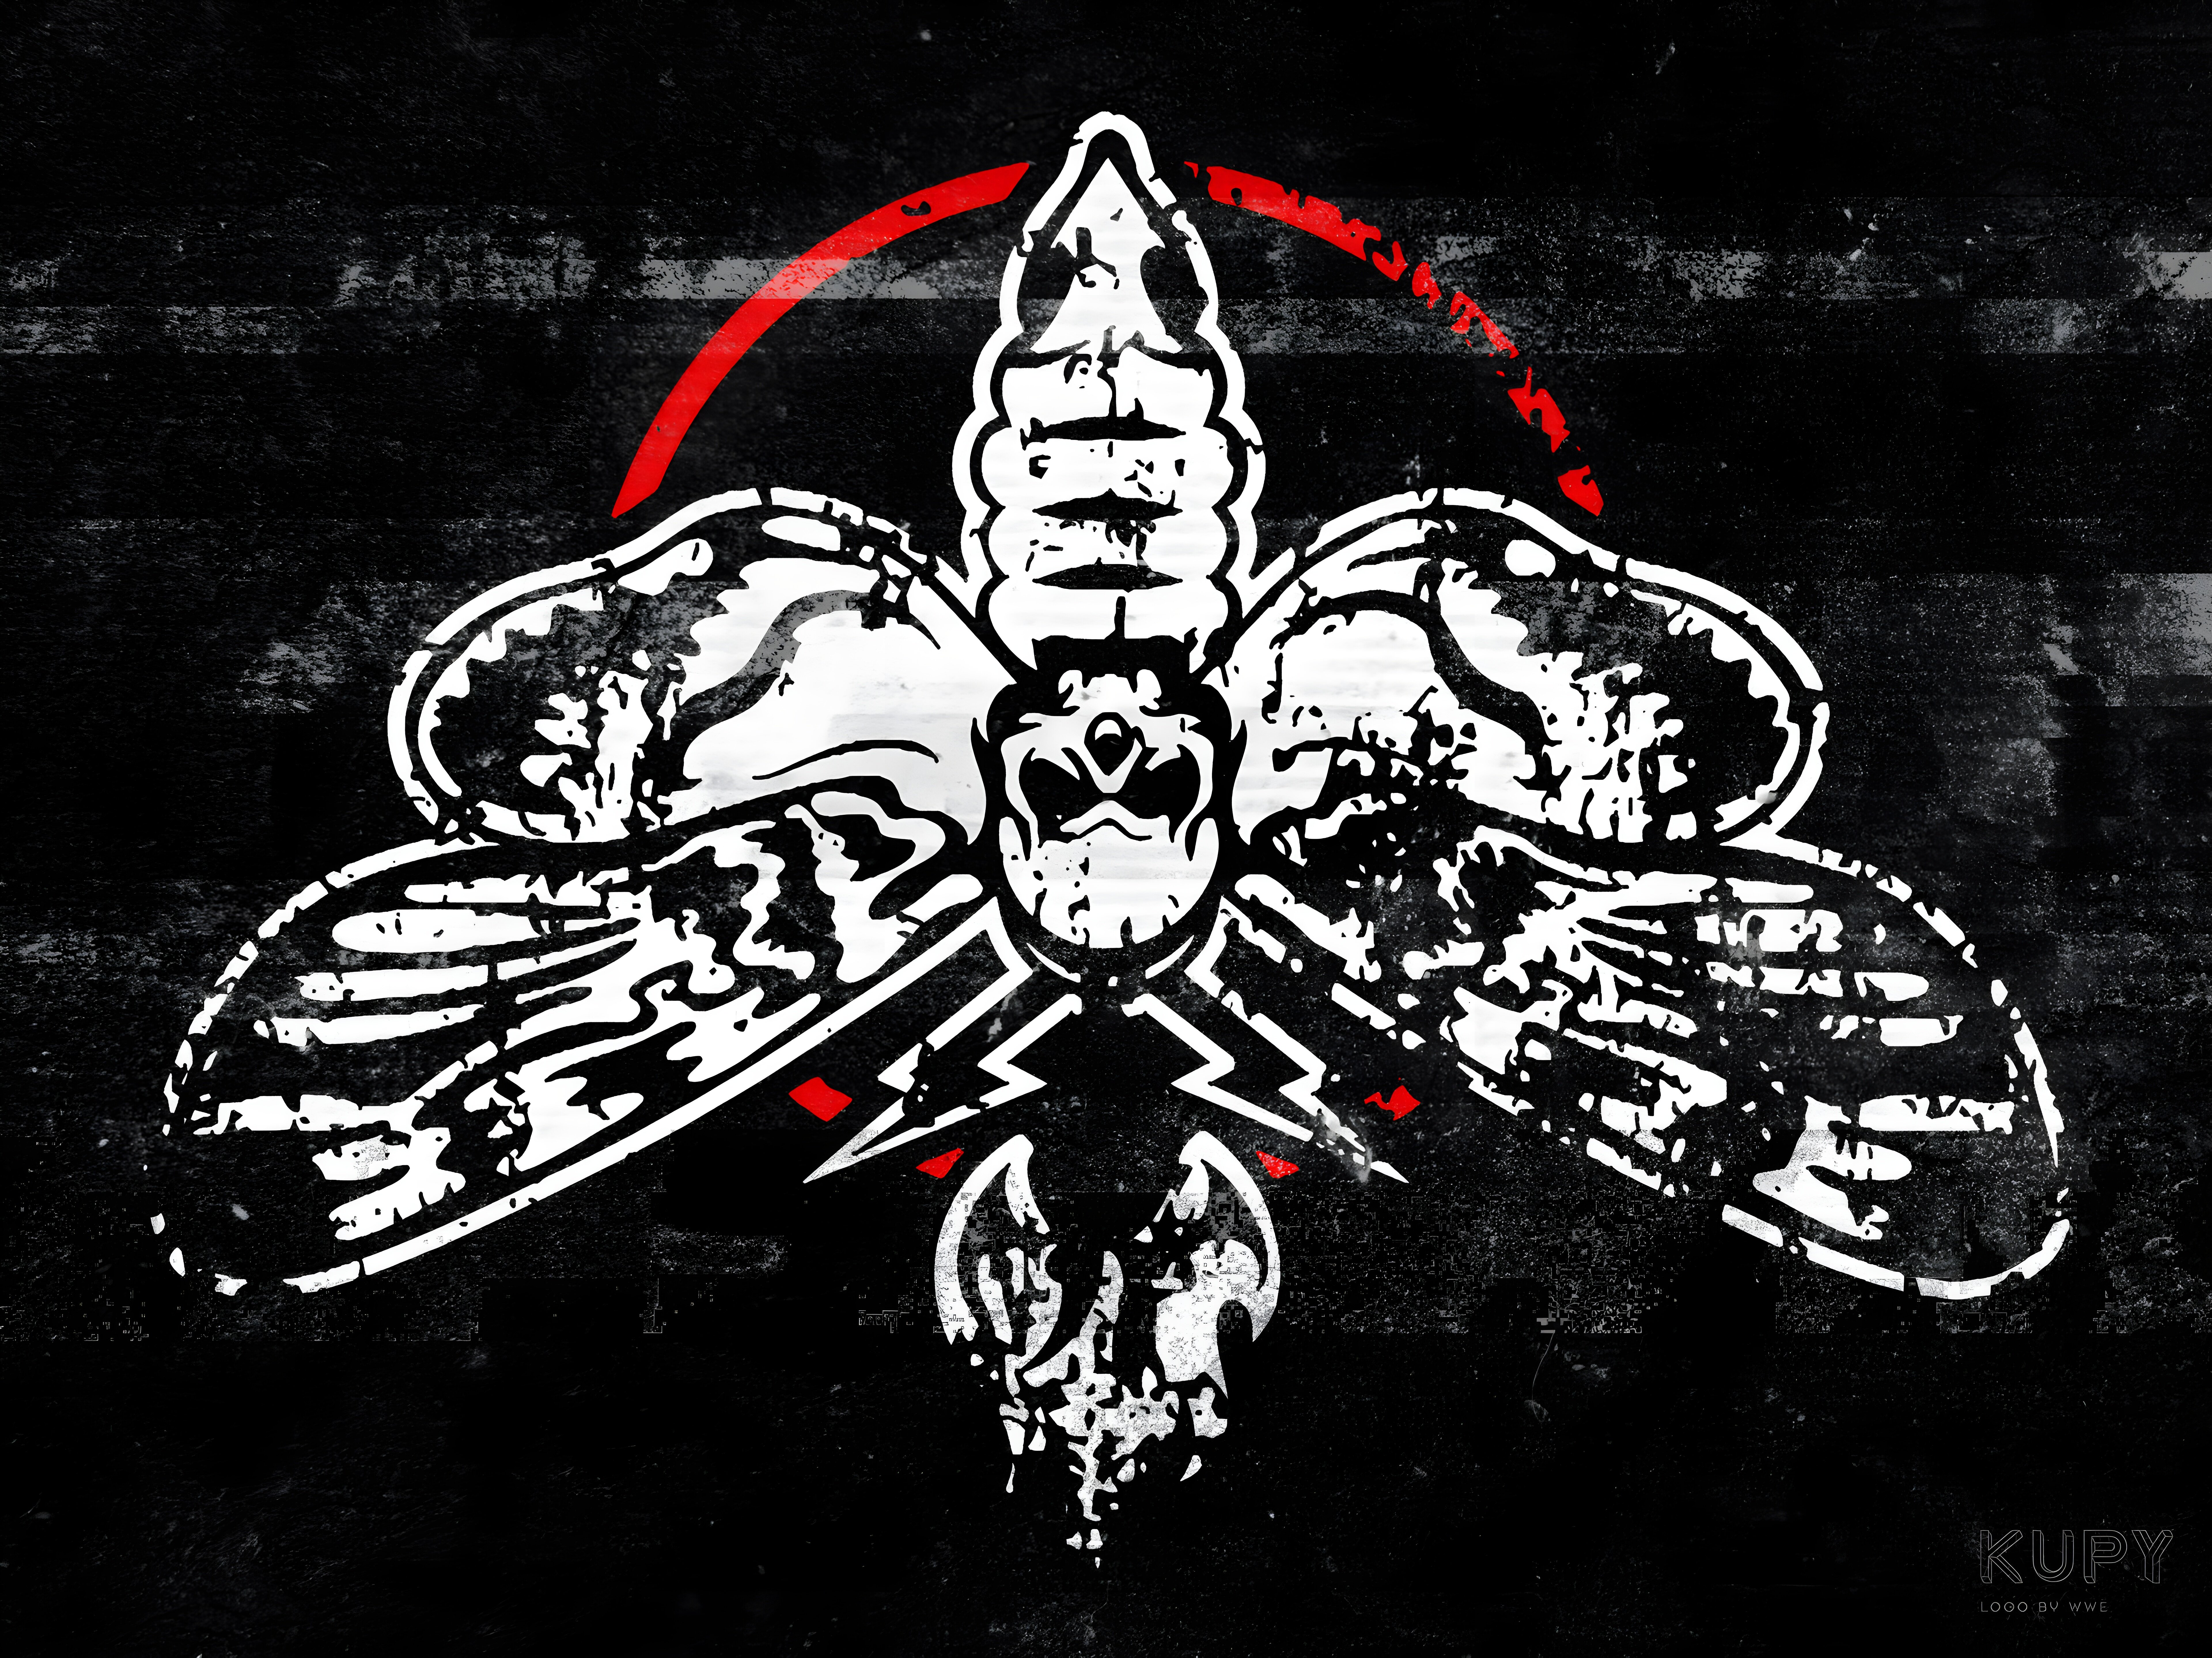 Bray Wyatt Logo - WWE by KUPY